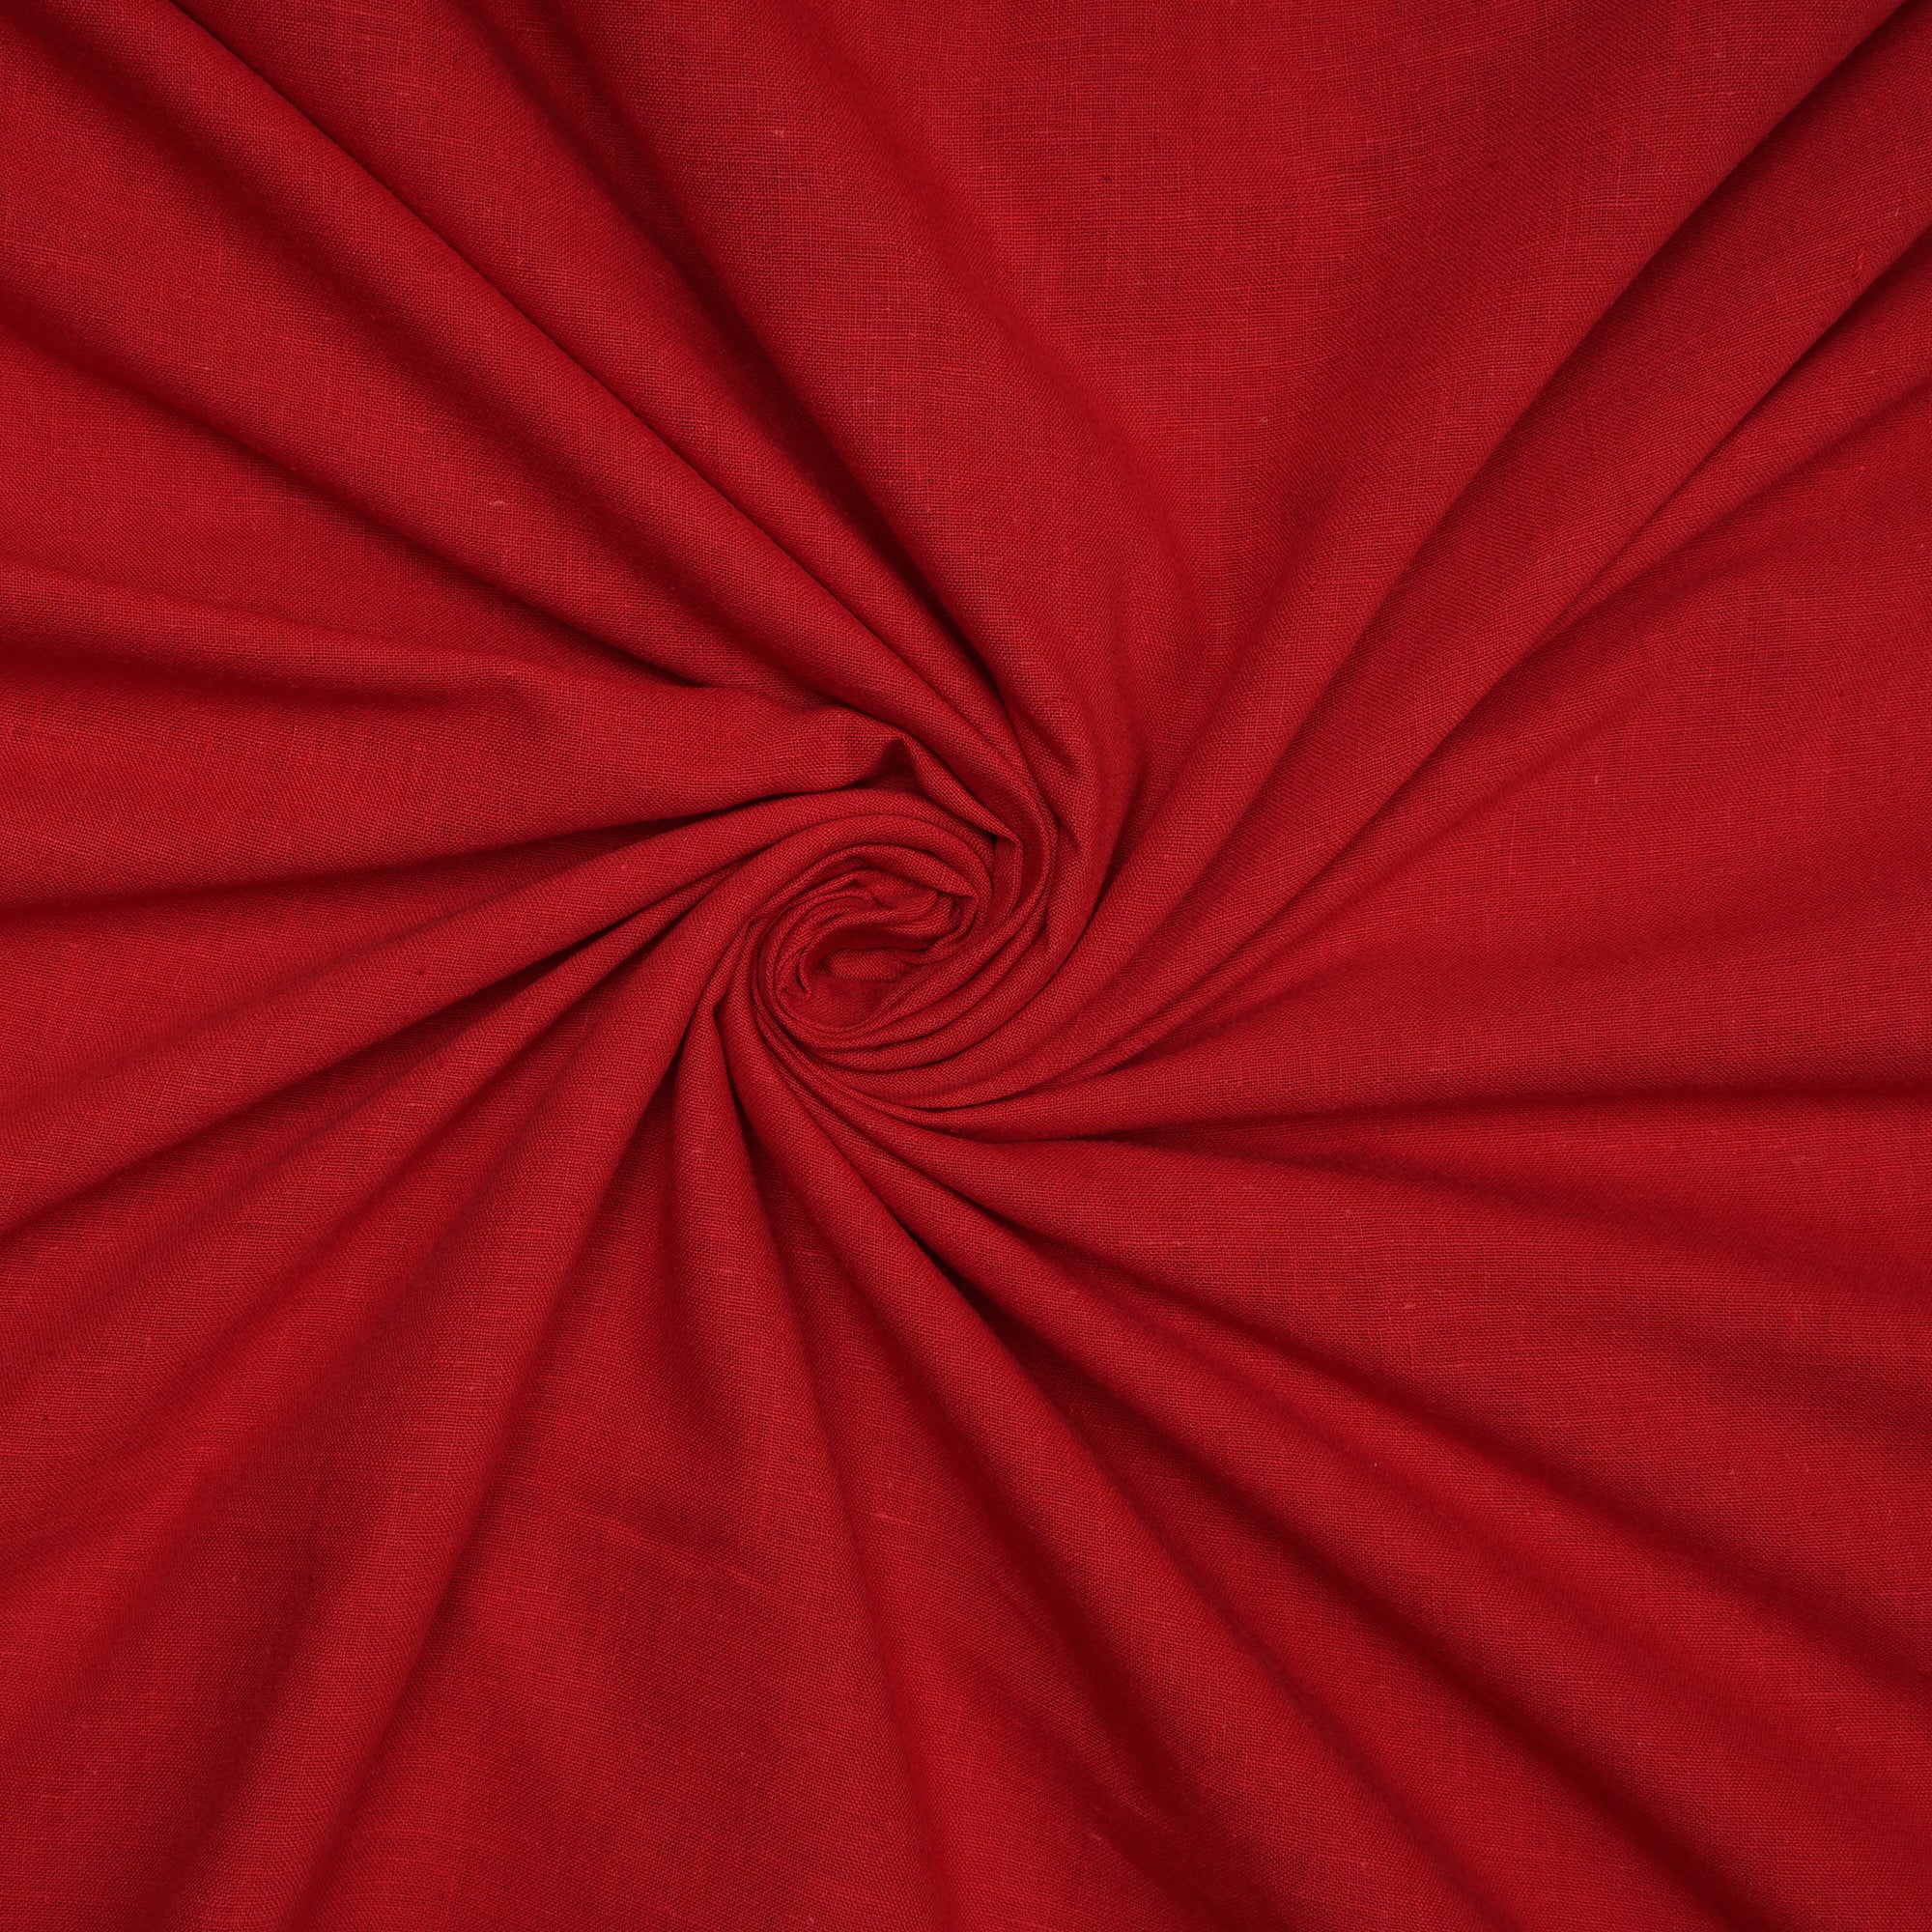 Red Handspun Handwoven Muslin Cotton Fabric